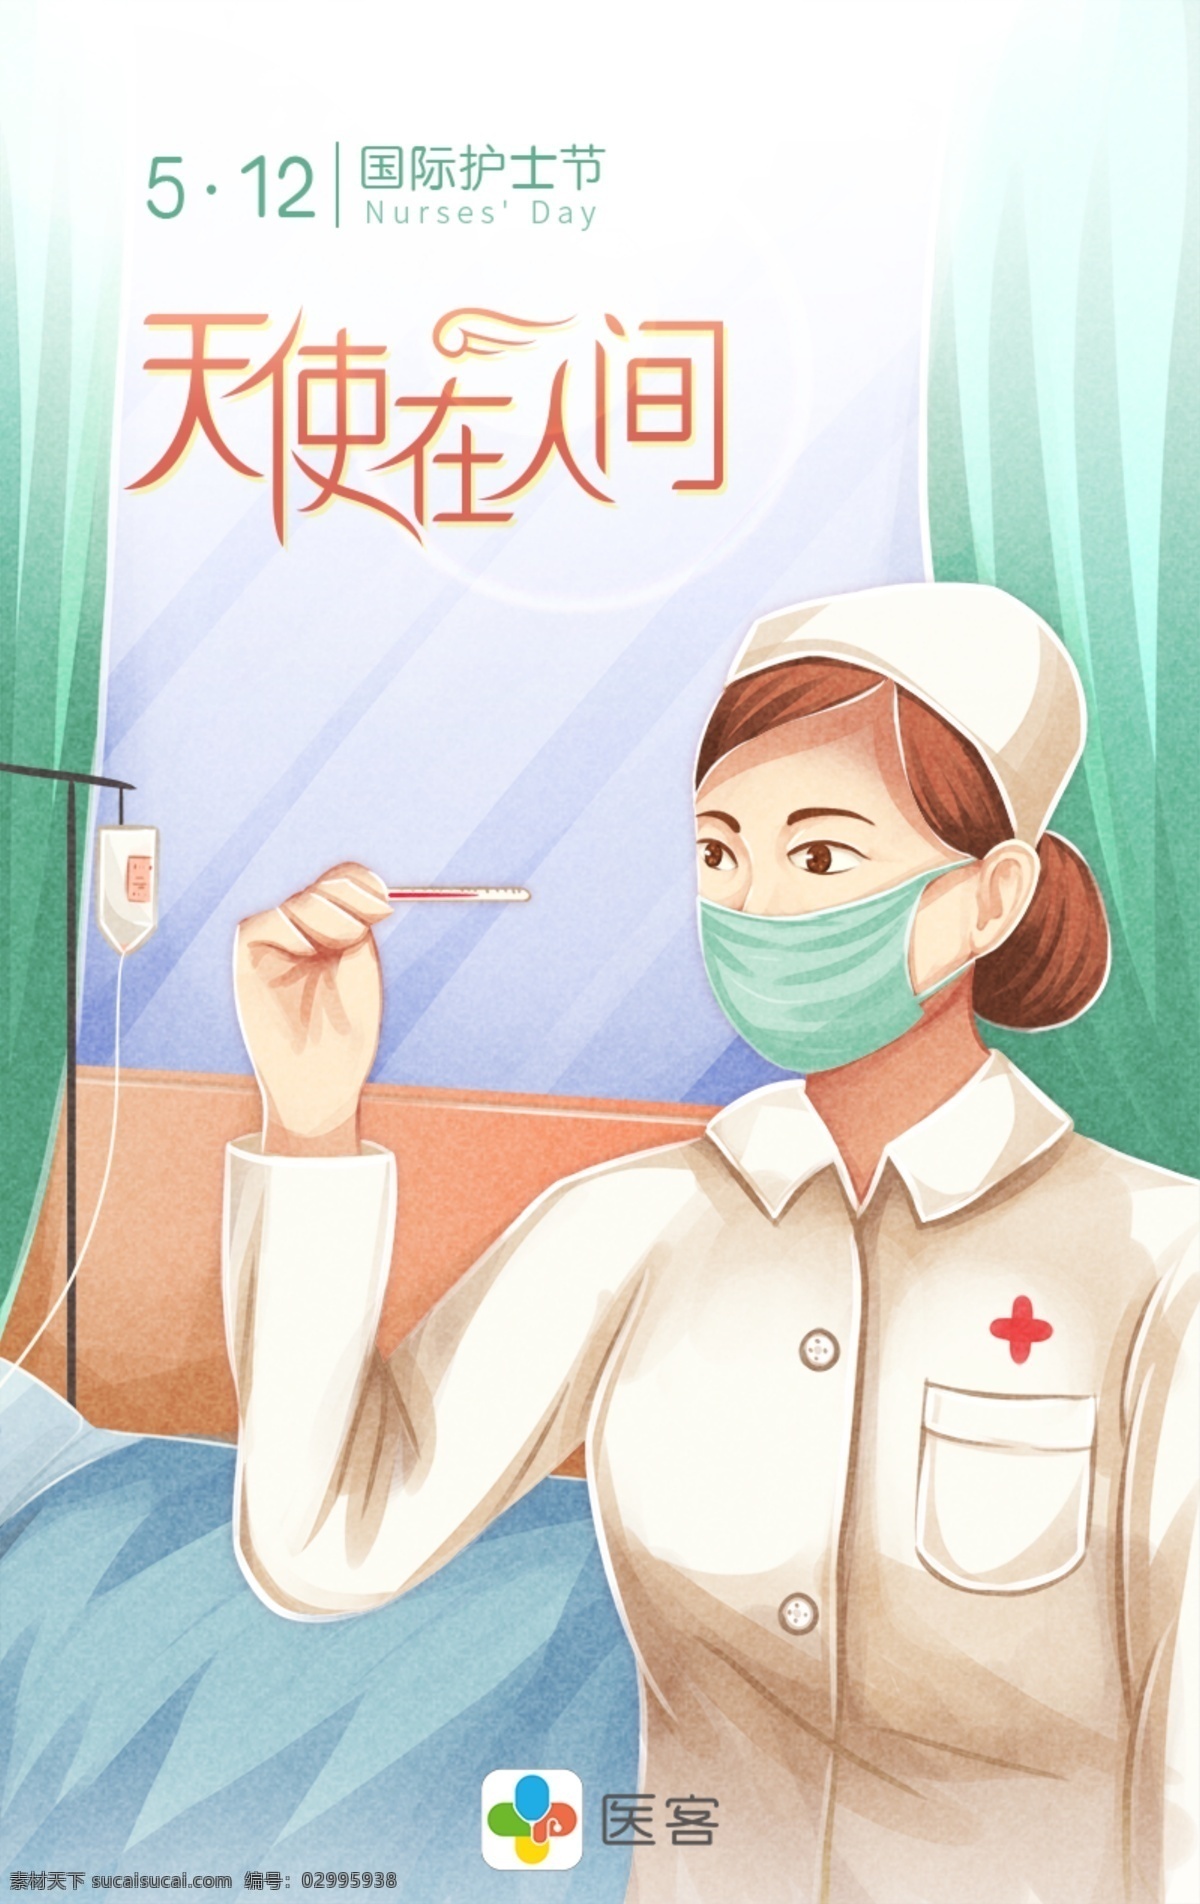 国际护士节 手绘 动漫 插画 海报 护士节